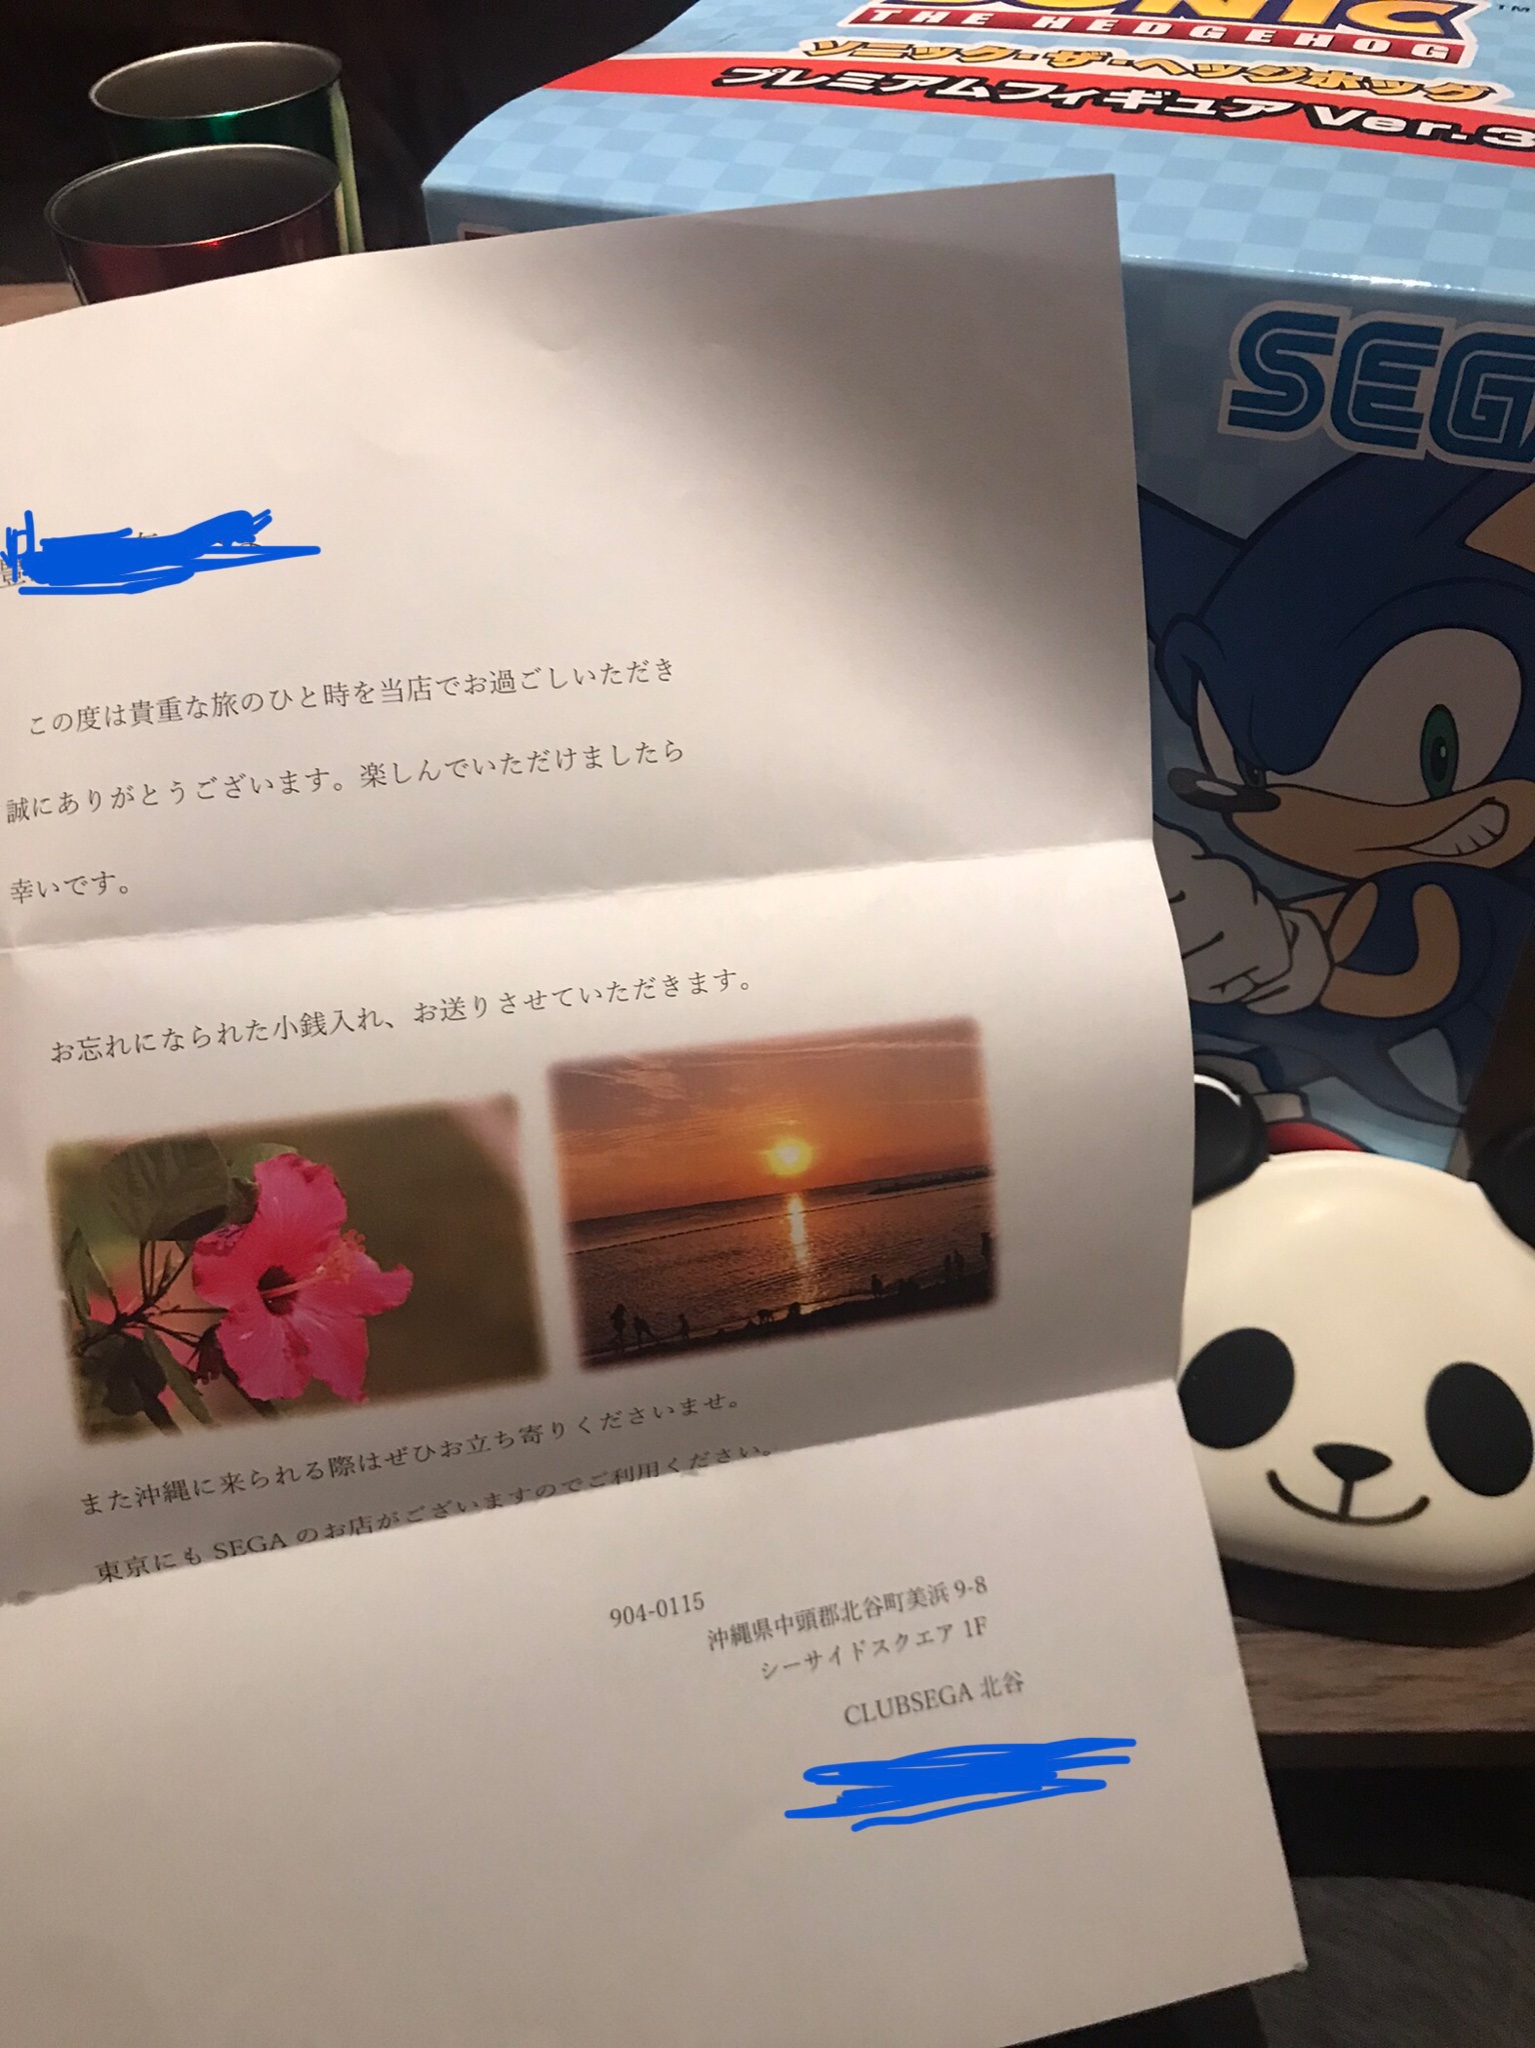 Colin Mitchell Sega 小銭財布を沖縄のsegaゲーセンにうっかり置いたまま帰っちゃった Segaは着払いを抜きにして郵送してくれた ビックリした それに素敵な手紙を送ってくれました 優しい Segaforever Sonic30th T Co Gnkbyxt1u3